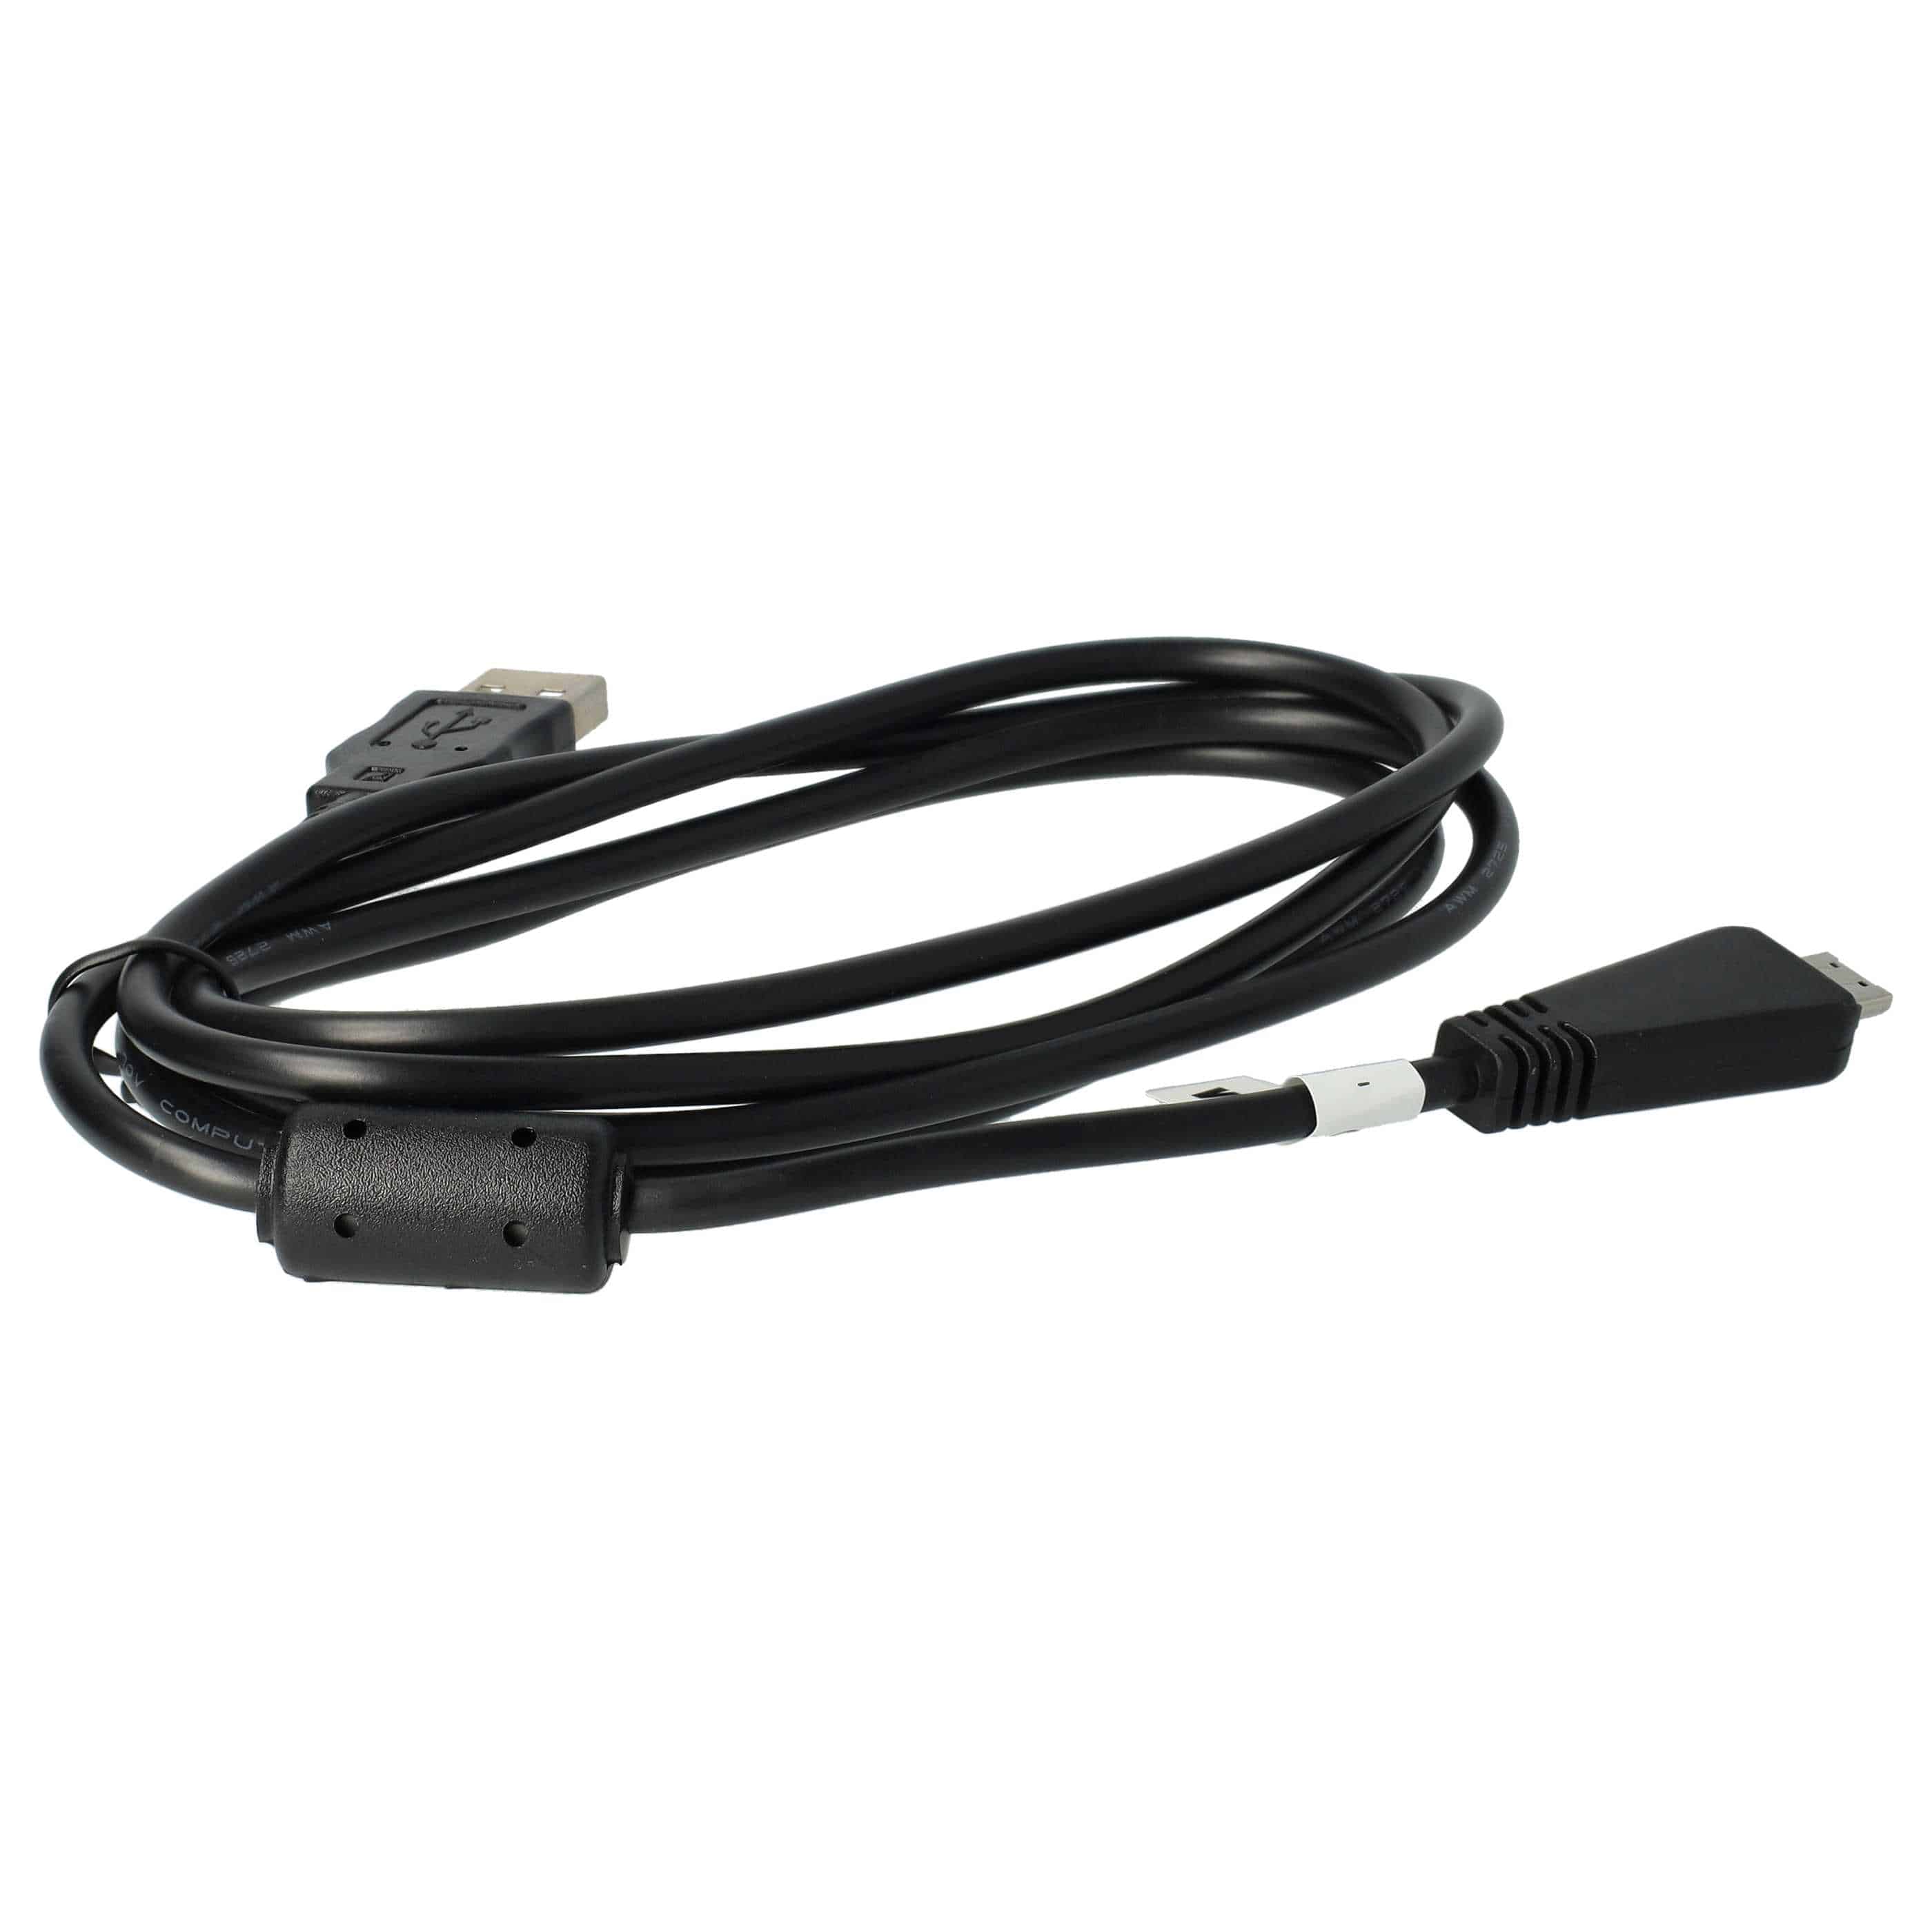 Câble de transfert USB remplace Sony VMC-MD3 (sans fonction AV) pour appareil photo Sony – 150 cm